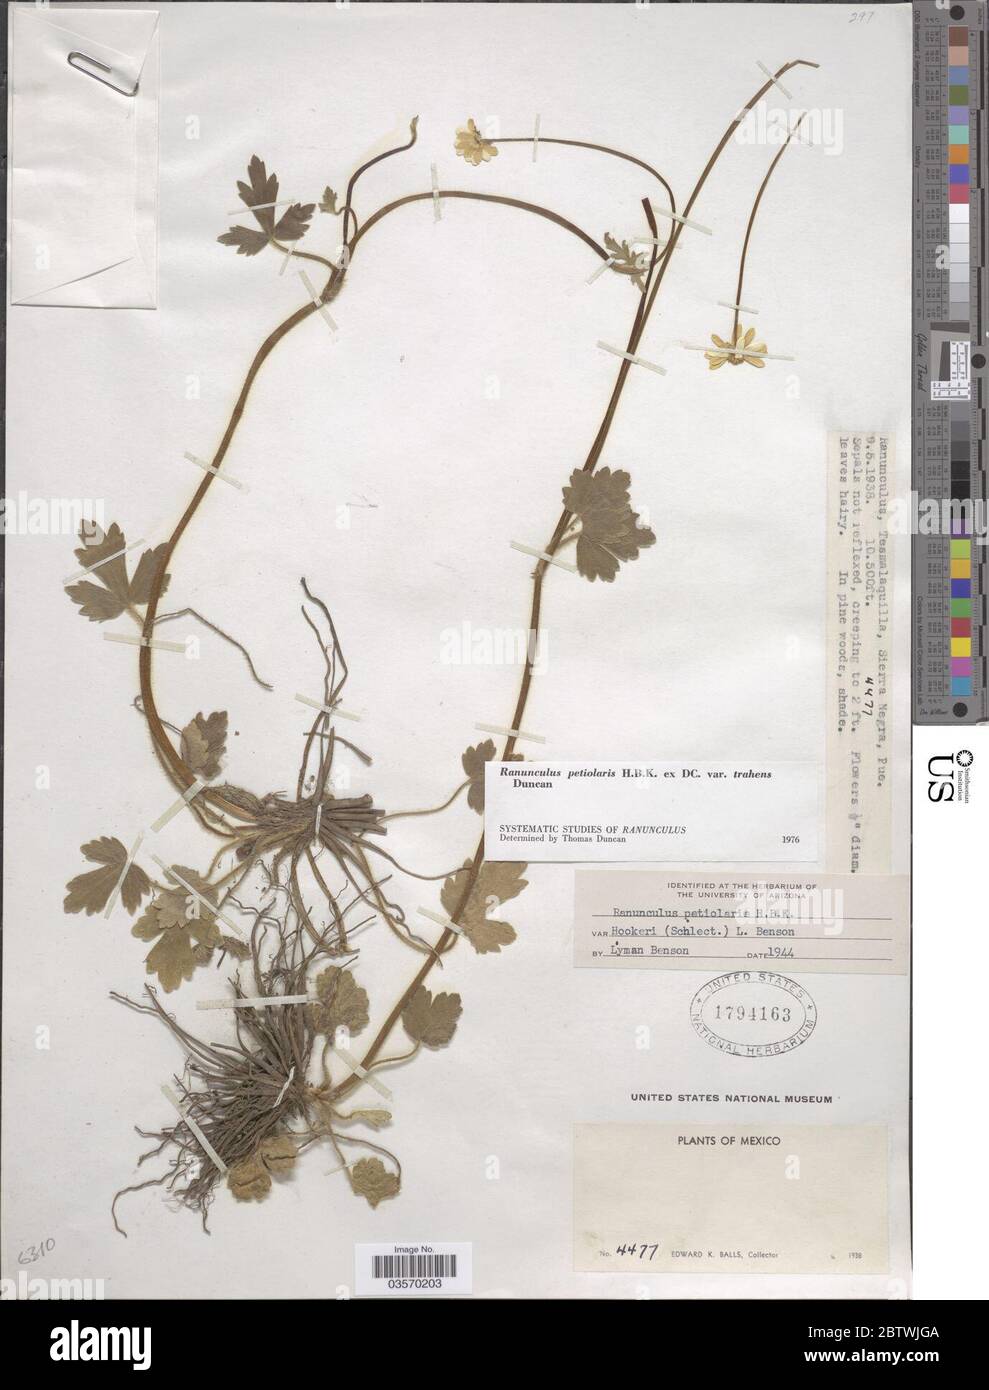 Ranunculus petiolaris var trahens Kunth ex DC. Stock Photo